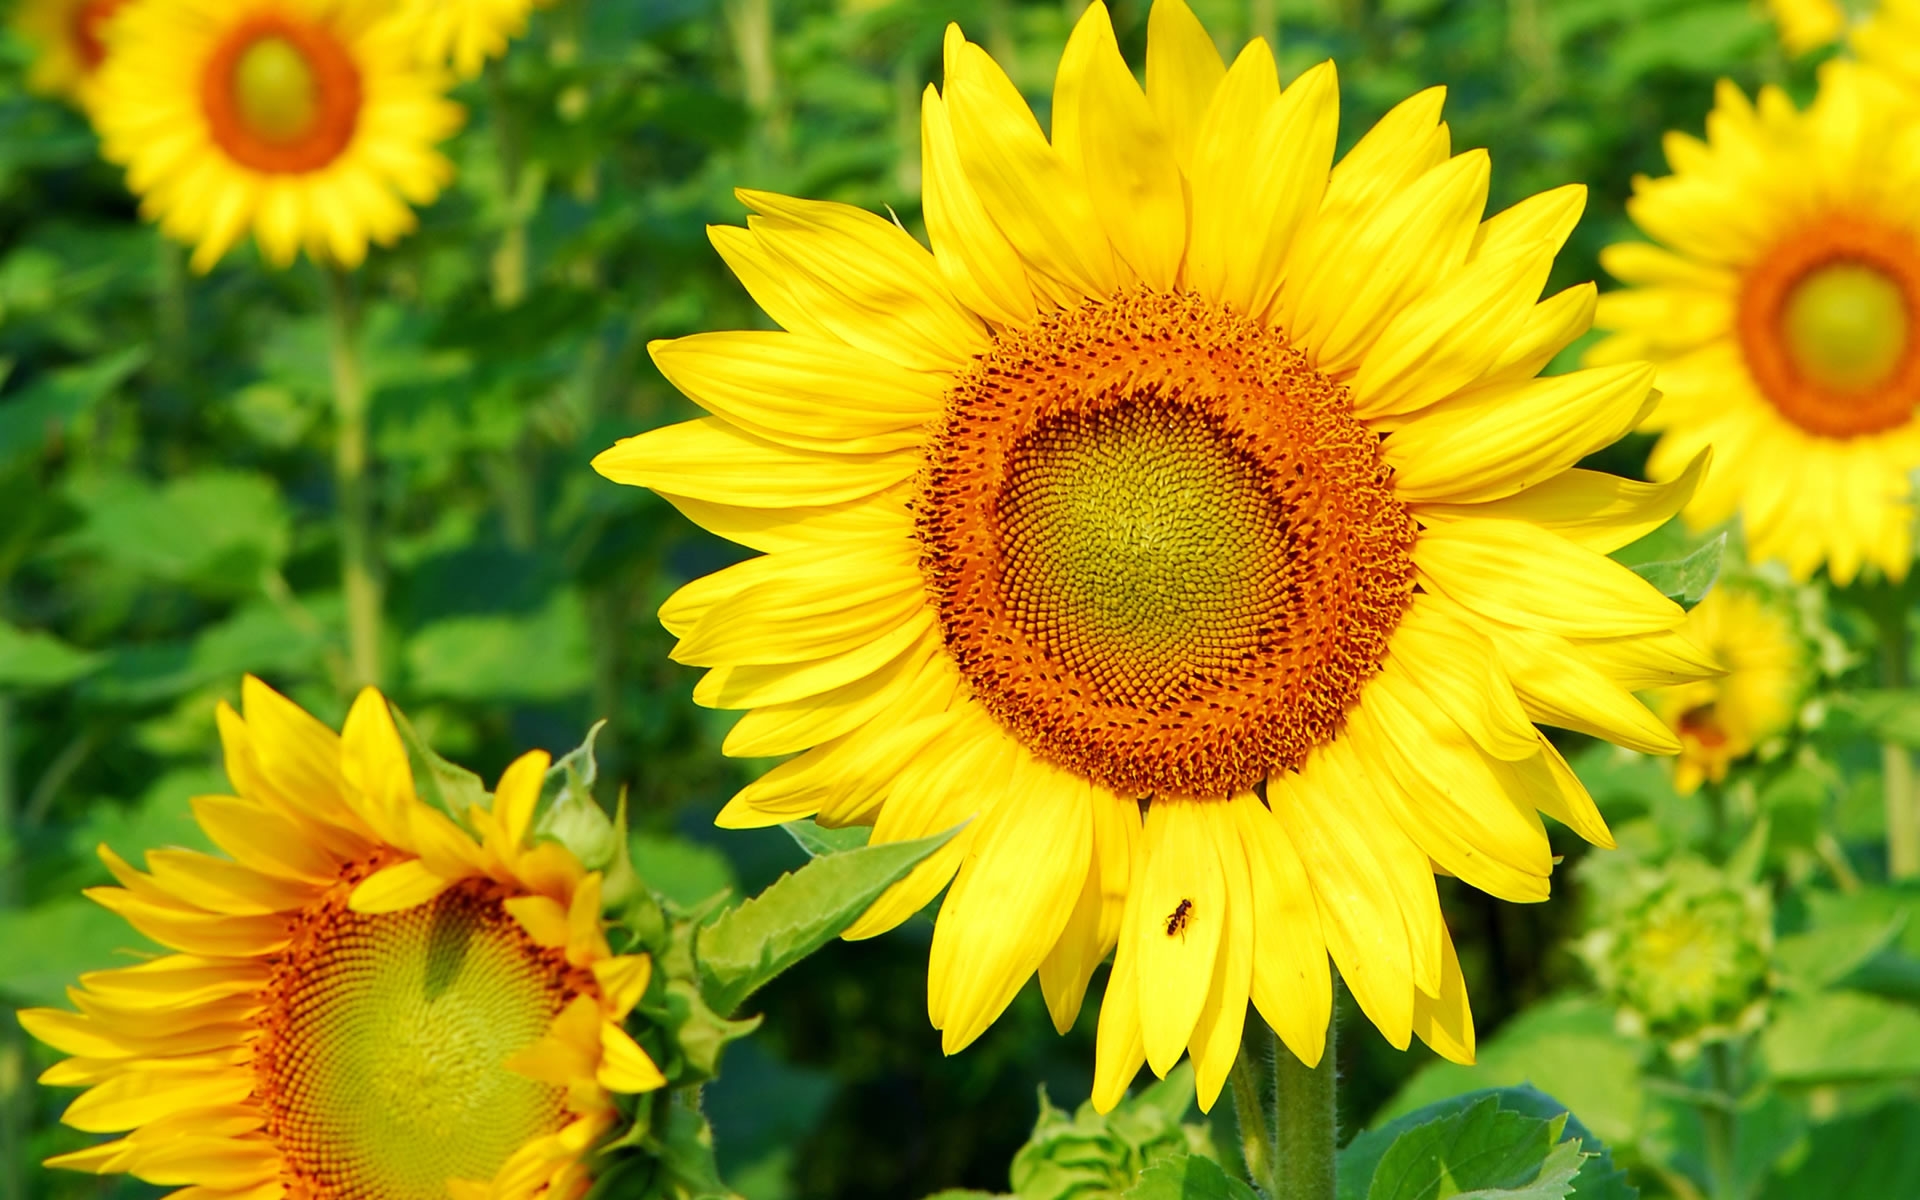 Superb Sunflower for 1920 x 1200 widescreen resolution